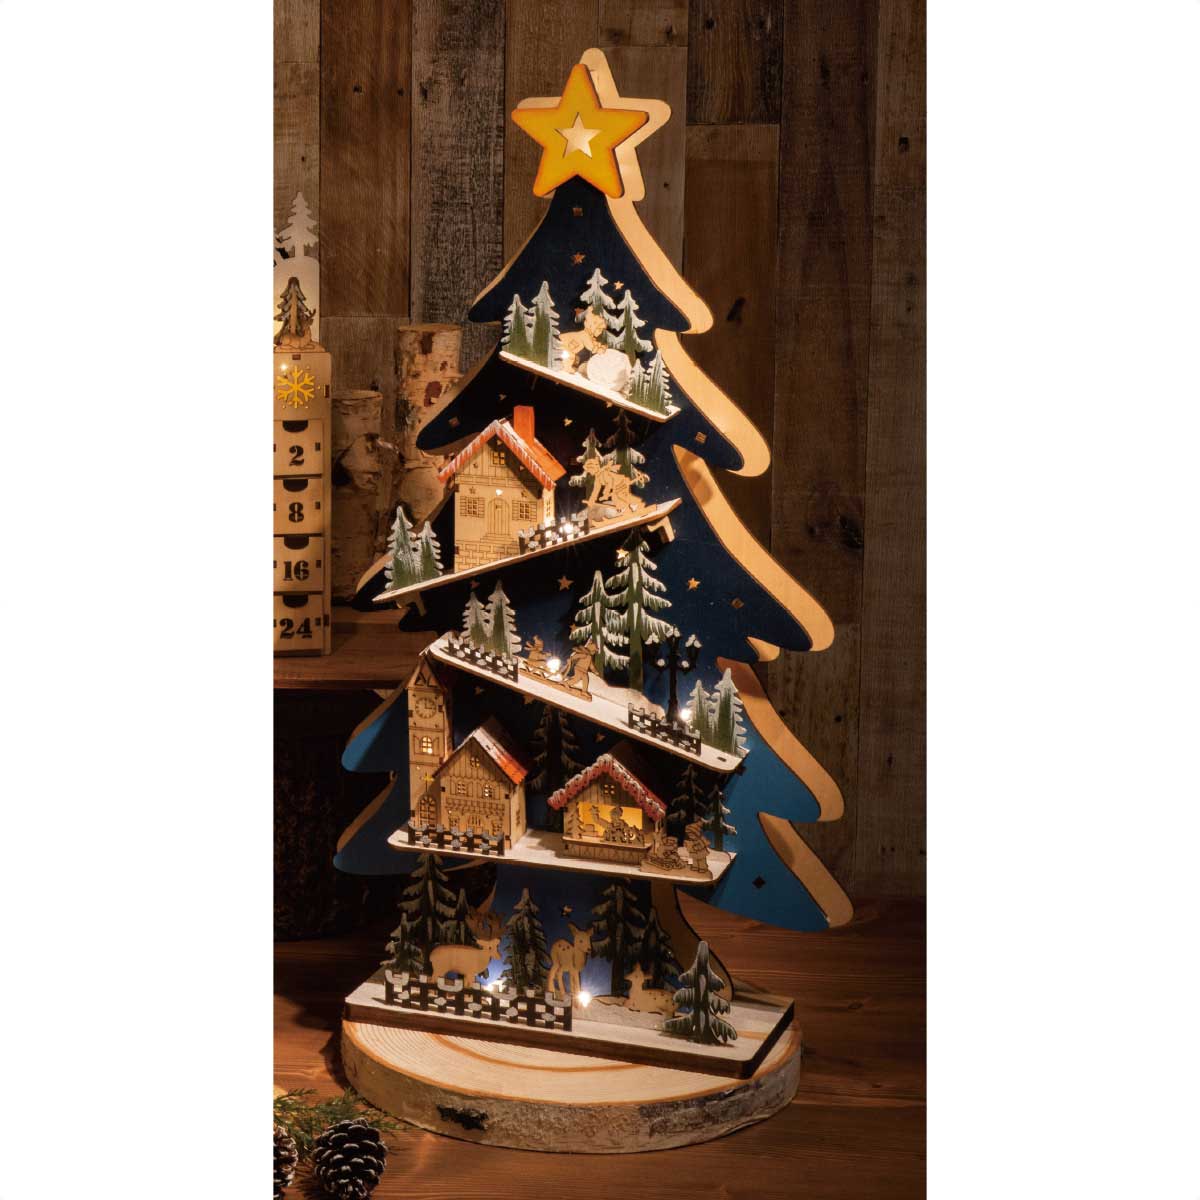 60cm Ledクリスマスツリーウッドスタンド 卓上おしゃれ雑貨 クリスマス飾り通販 ストエキ